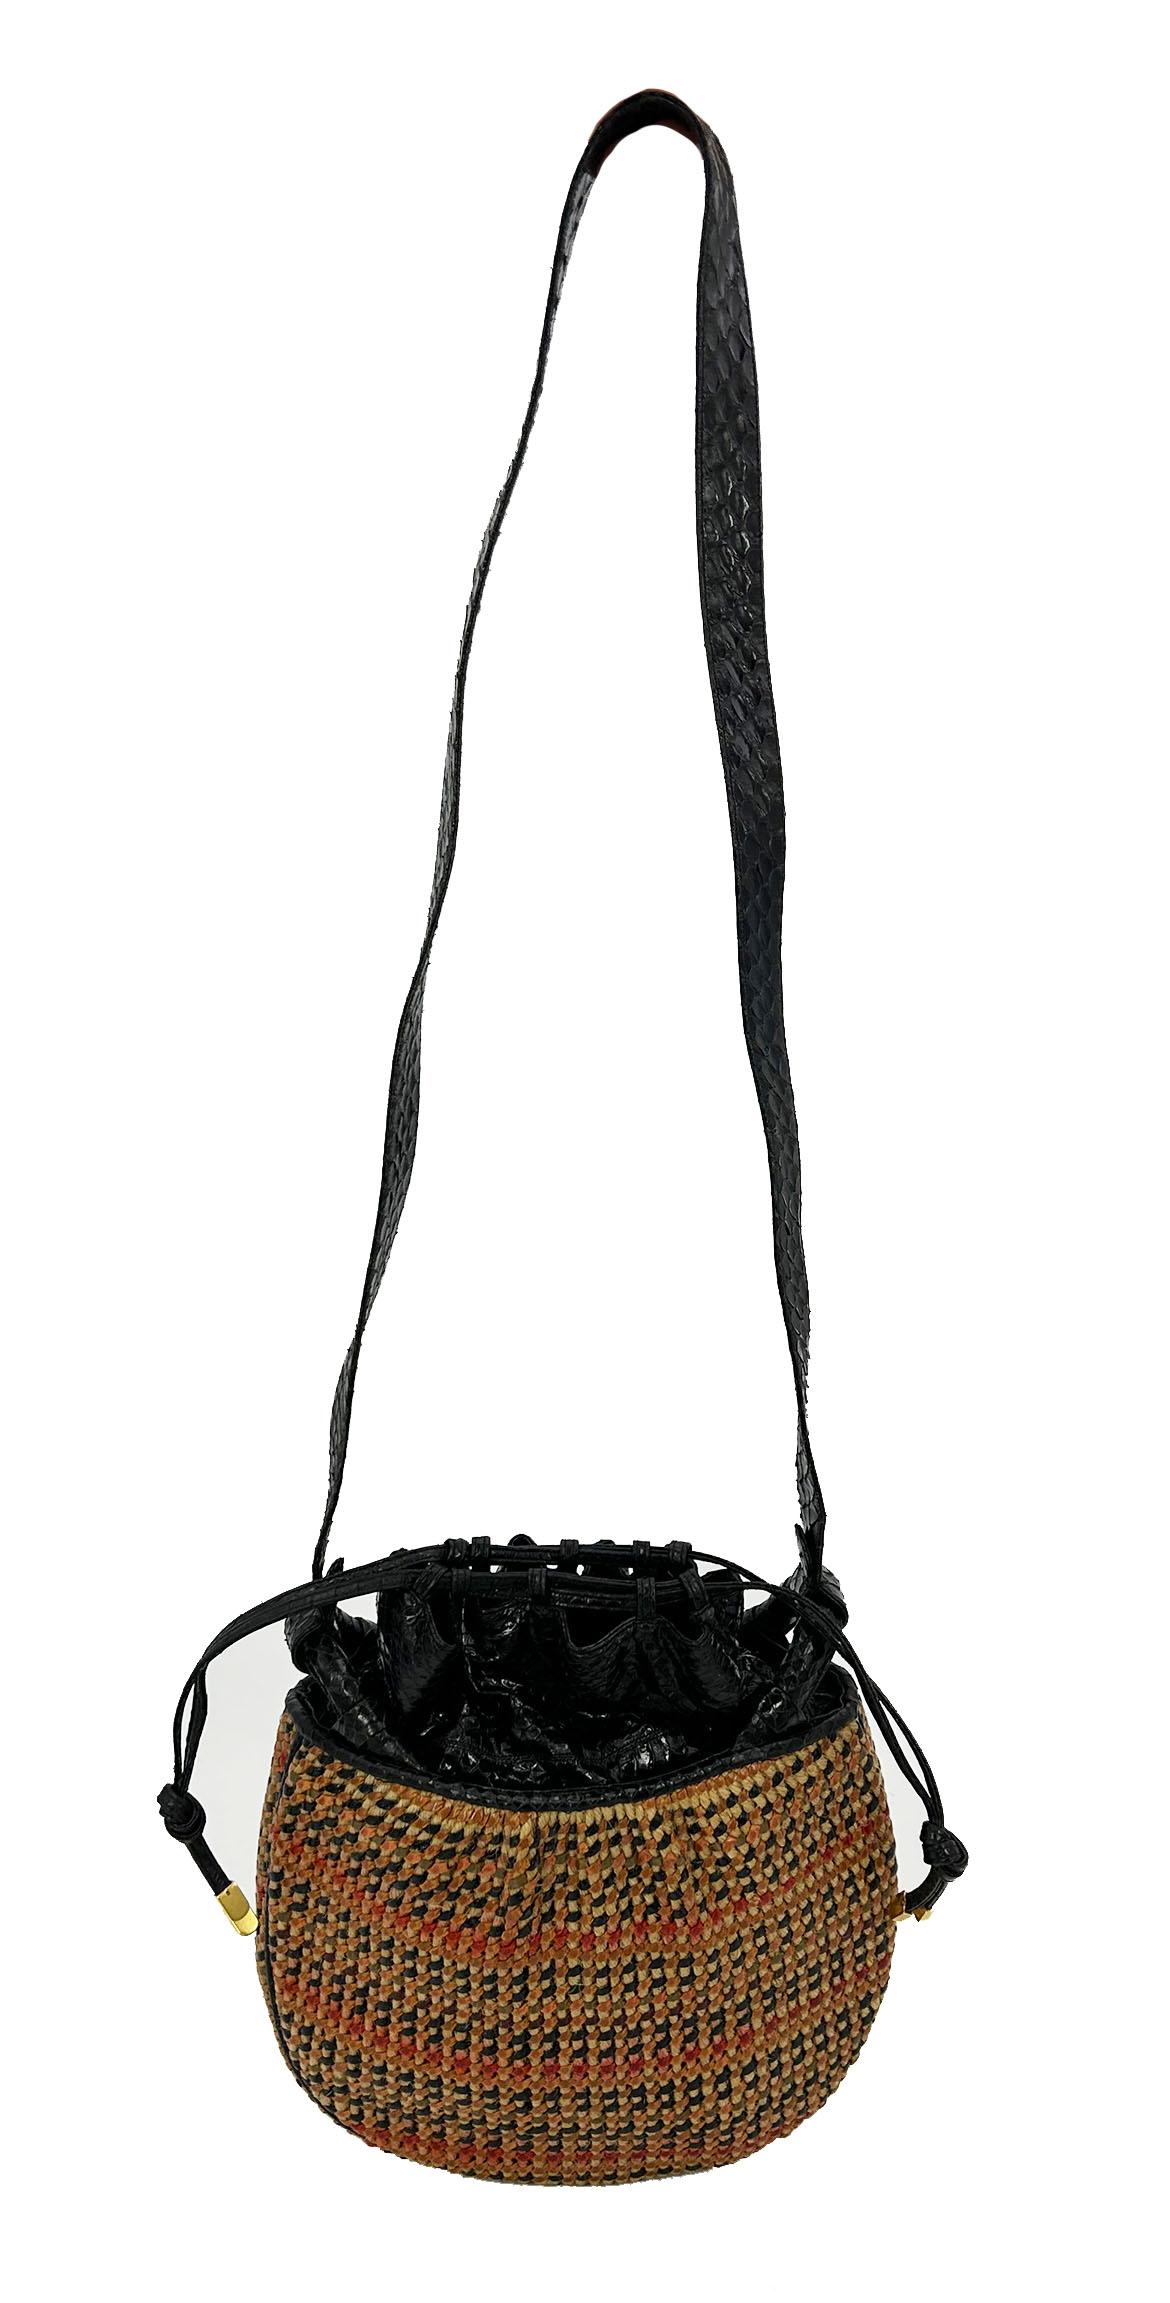 Judith Leiber Vintage Basket Weave Snakeskin Drawstring Shoulder Bag in ausgezeichnetem Zustand. Braunes Korbgeflecht aus Rattan mit schwarzem, rotbraunem und grünem Leder. Schwarzer Schlangenlederbesatz an den Kanten, oben und am Schulterriemen.